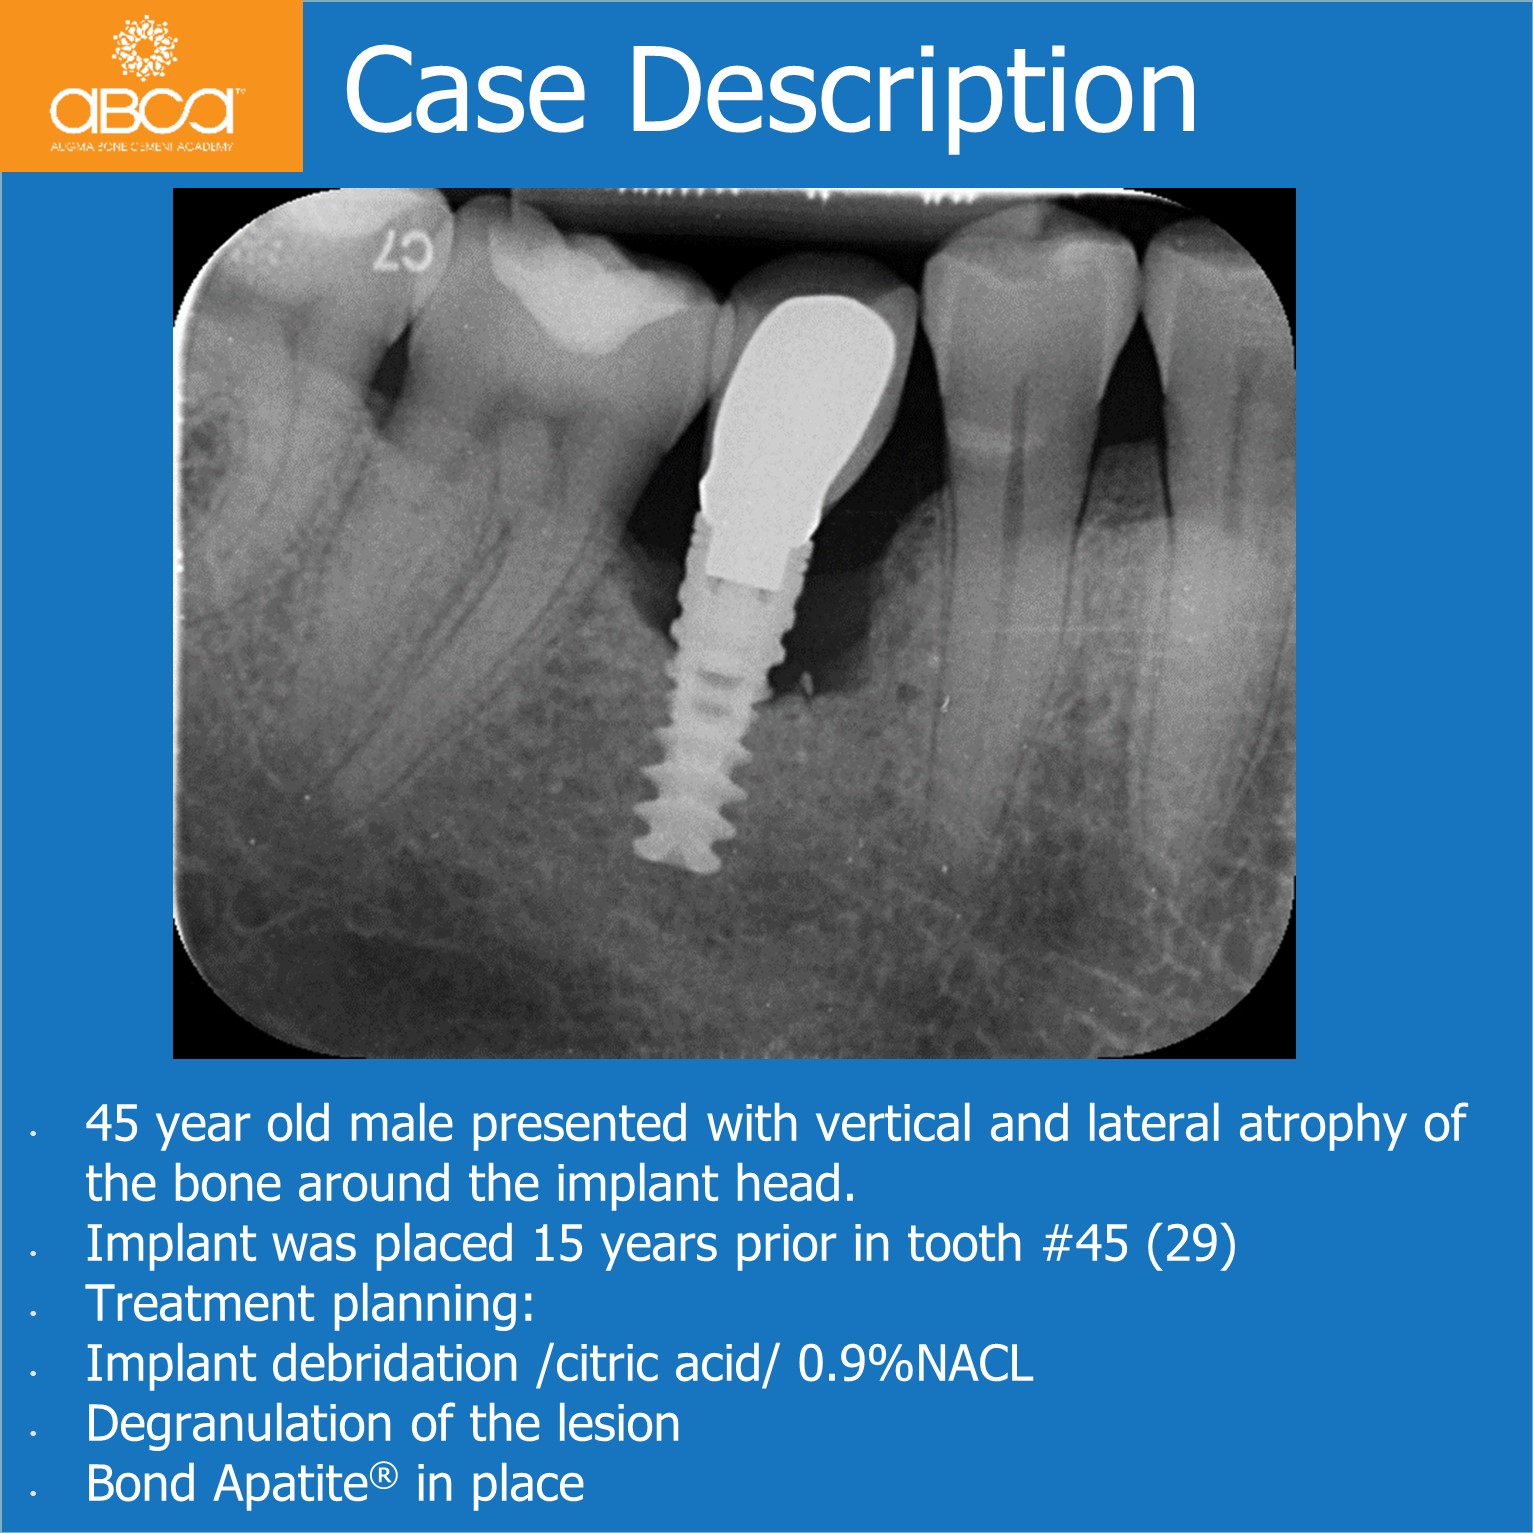 Case Description